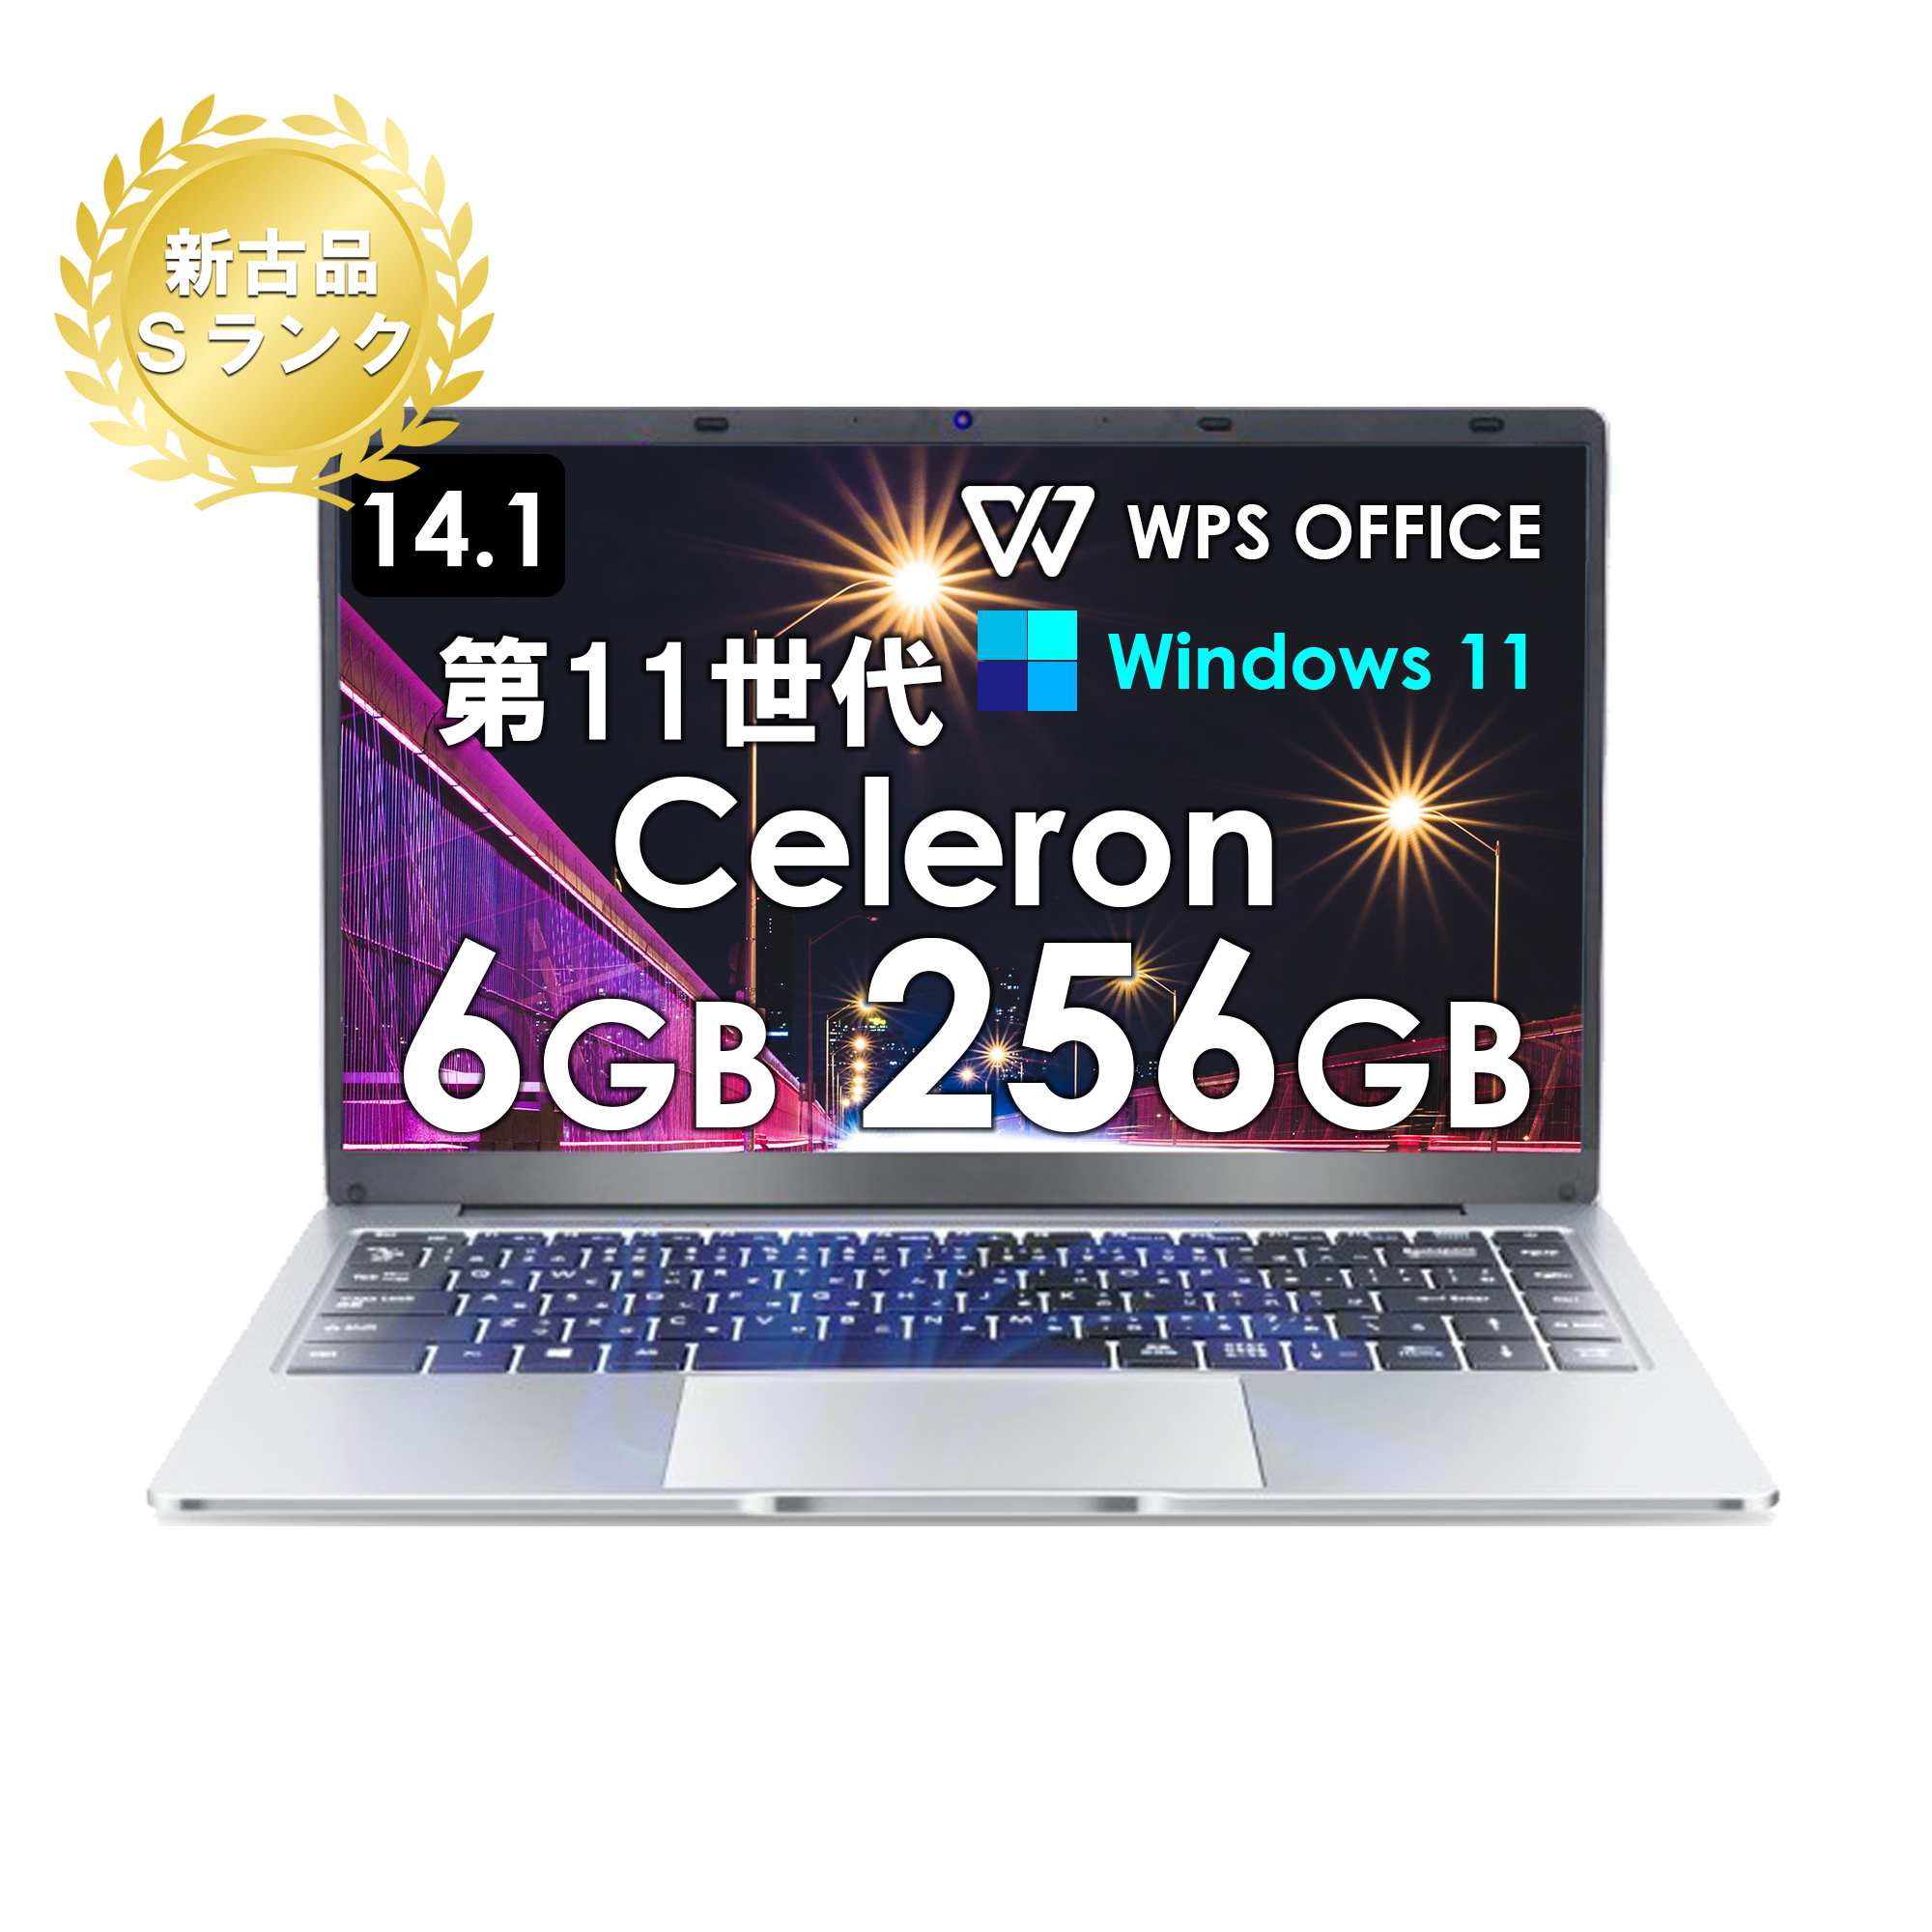 【新古品パソコン】（Sランク）ノートパソコン office付 Windows11 ノートPC 14インチ メモリ6GB SSD256GB  薄型ノートPC インテルCeleron N3350 WIFI Bluetooth